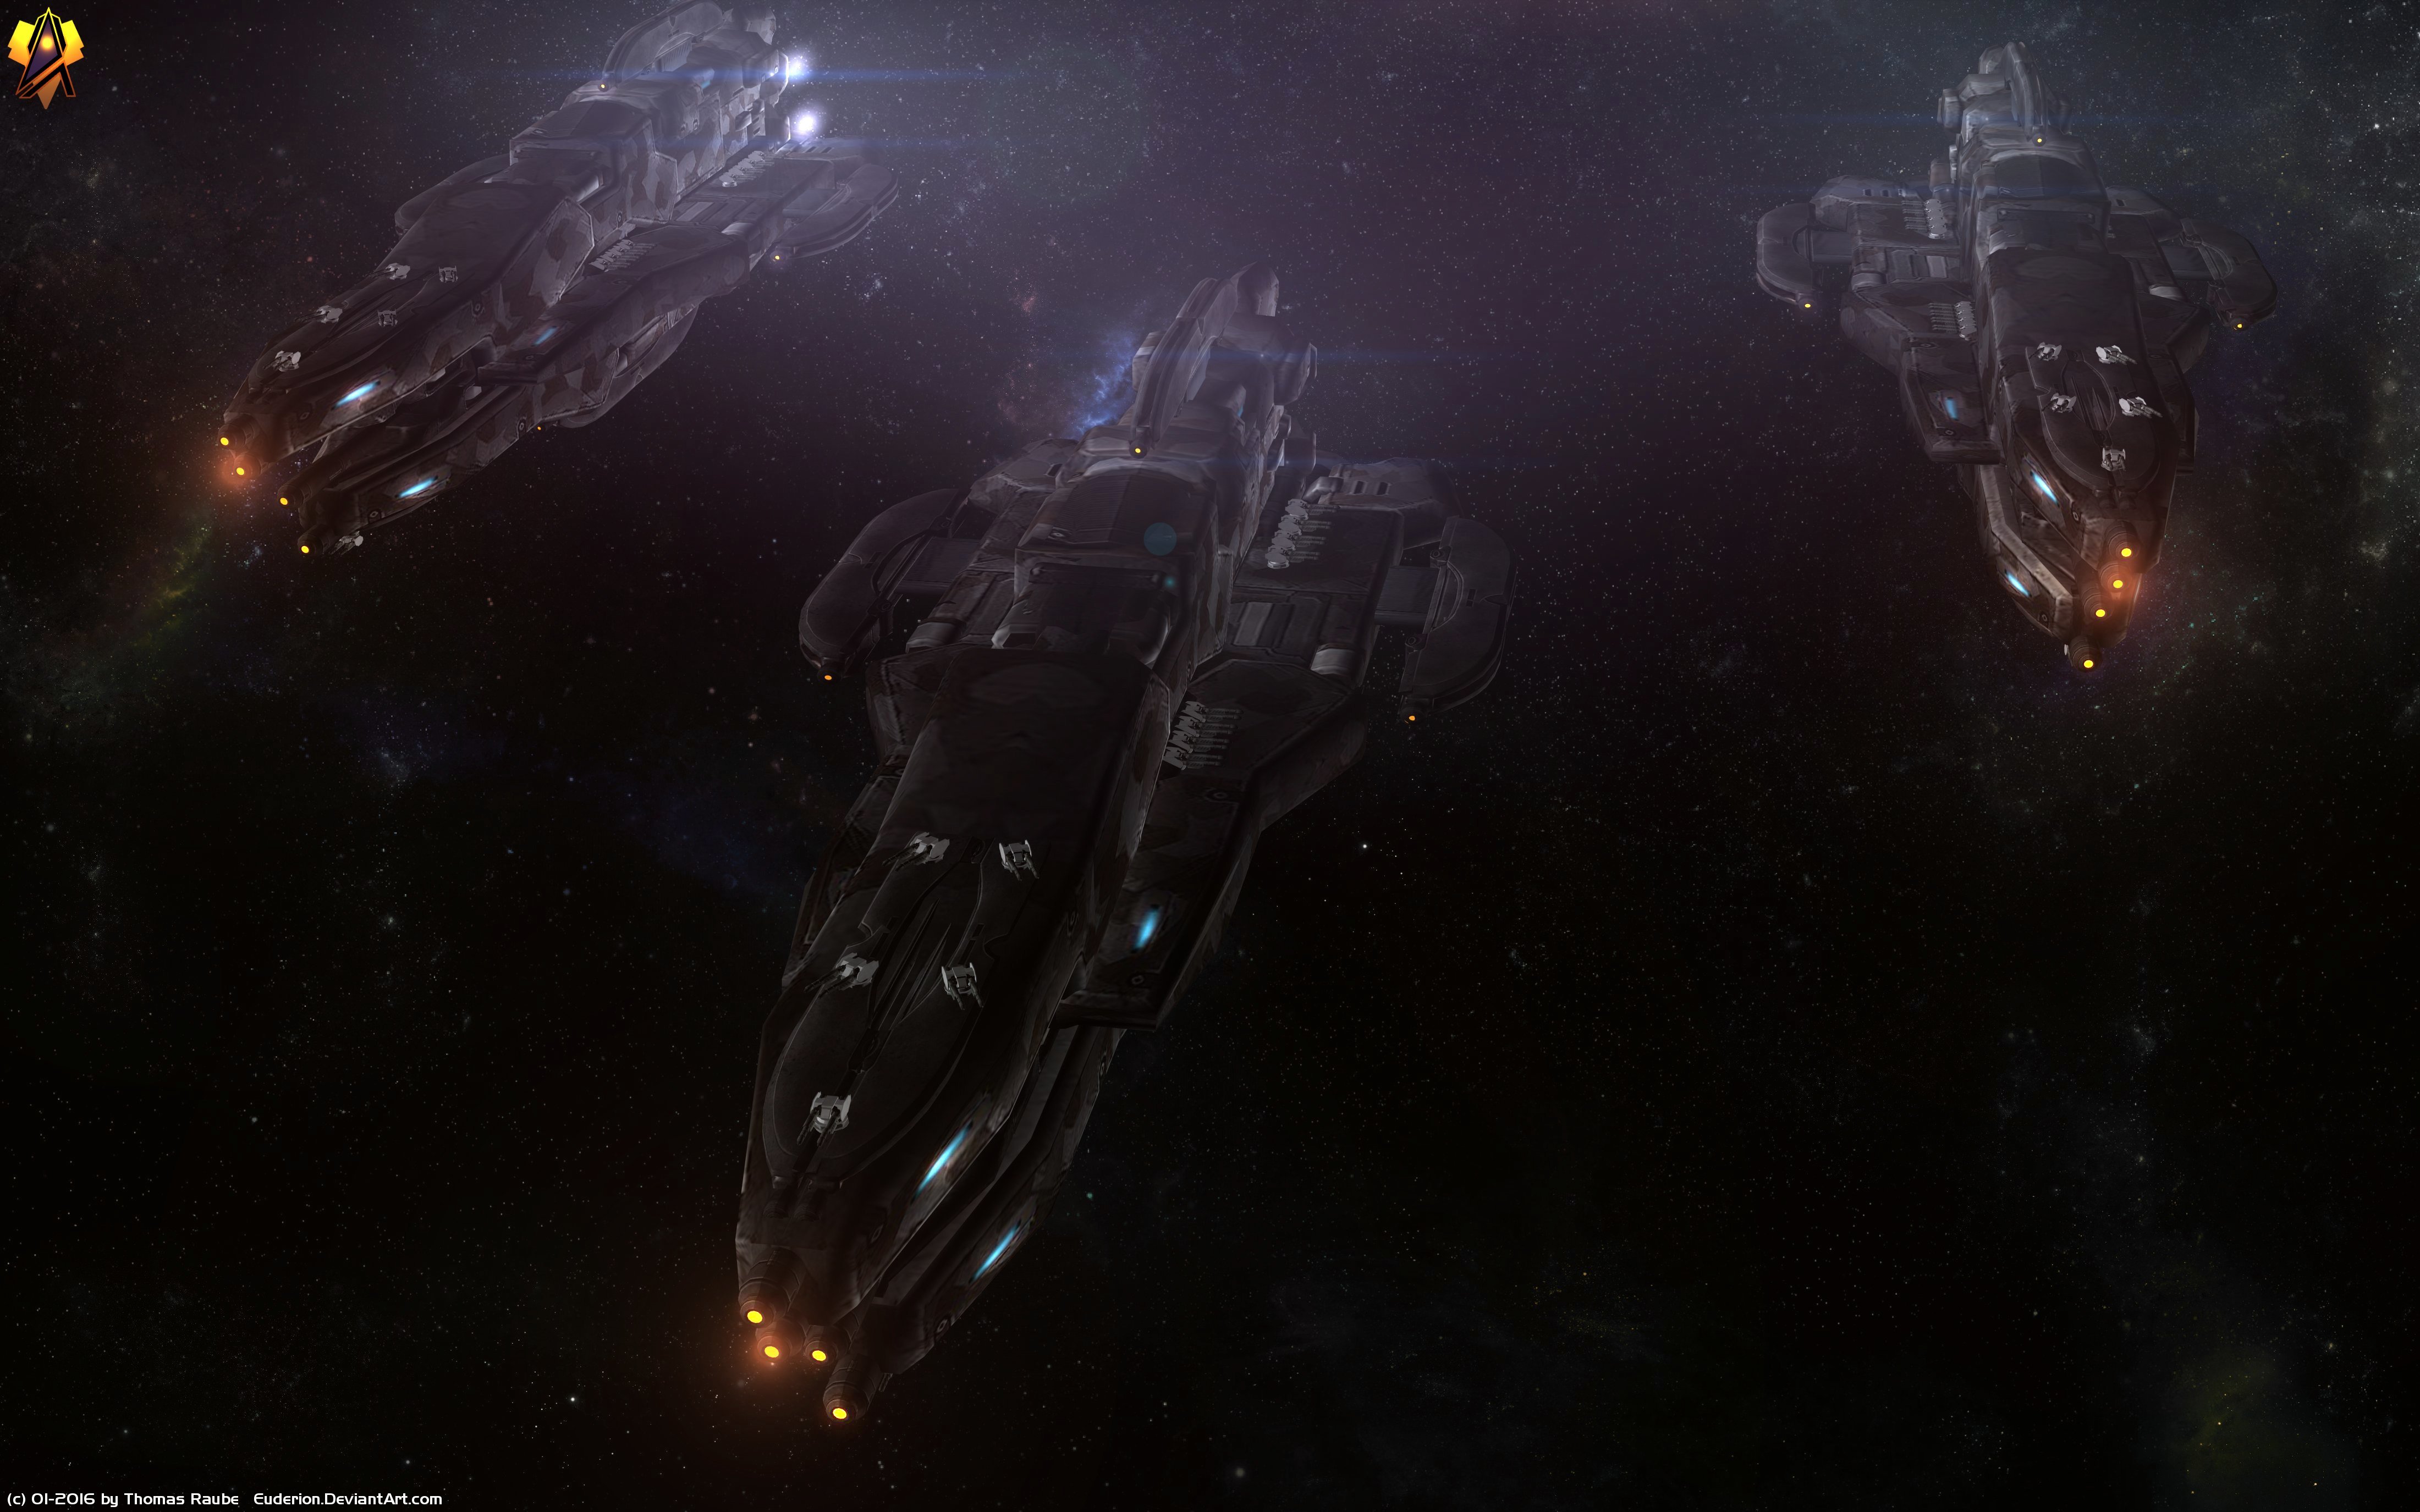 Batarian Mass Effect Mass Effect Starship Spaceship Futuristic Sci Fi 4400x2750